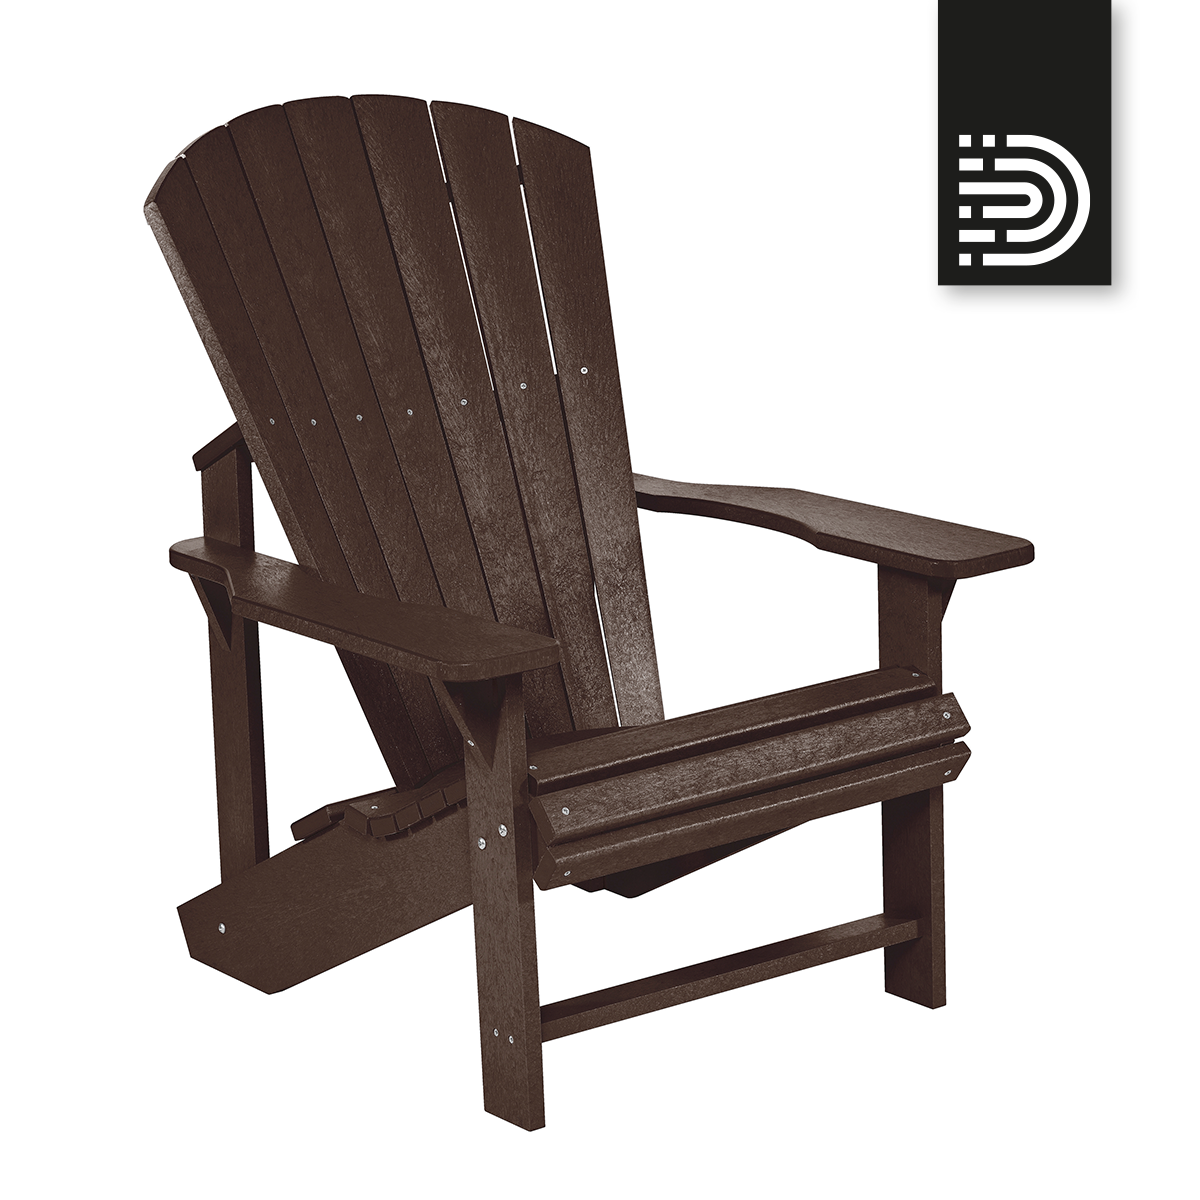  C01 Classic Adirondack Chair - chocolate 16